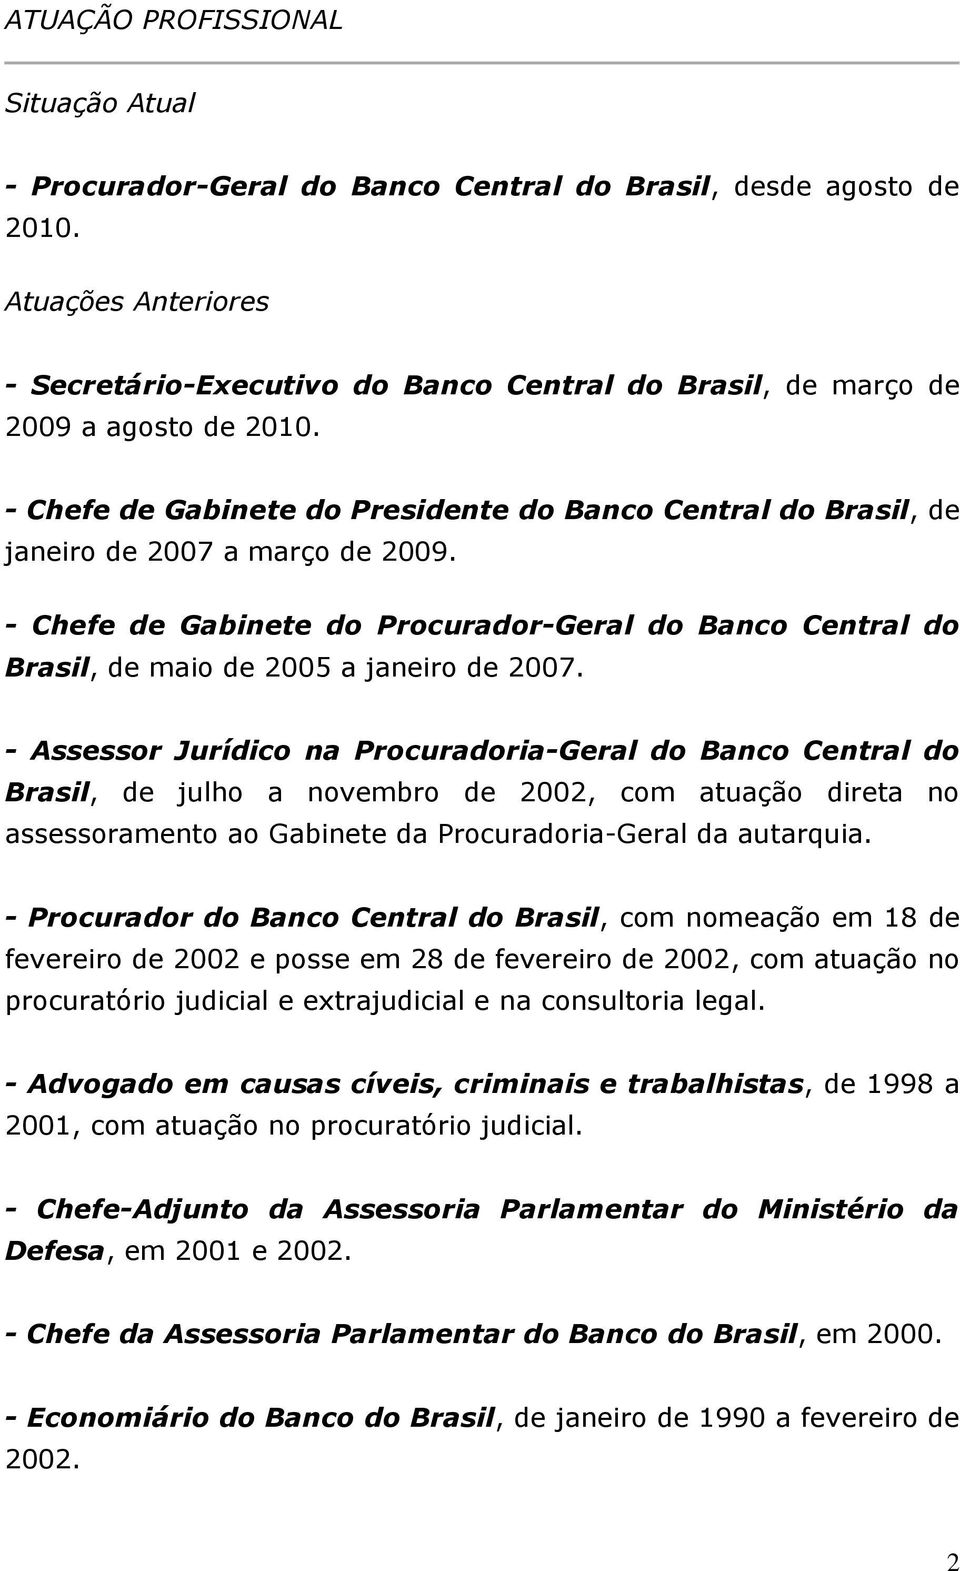 - Chefe de Gabinete do Presidente do Banco Central do Brasil, de janeiro de 2007 a março de 2009. - Chefe de Gabinete do Procurador-Geral do Banco Central do Brasil, de maio de 2005 a janeiro de 2007.